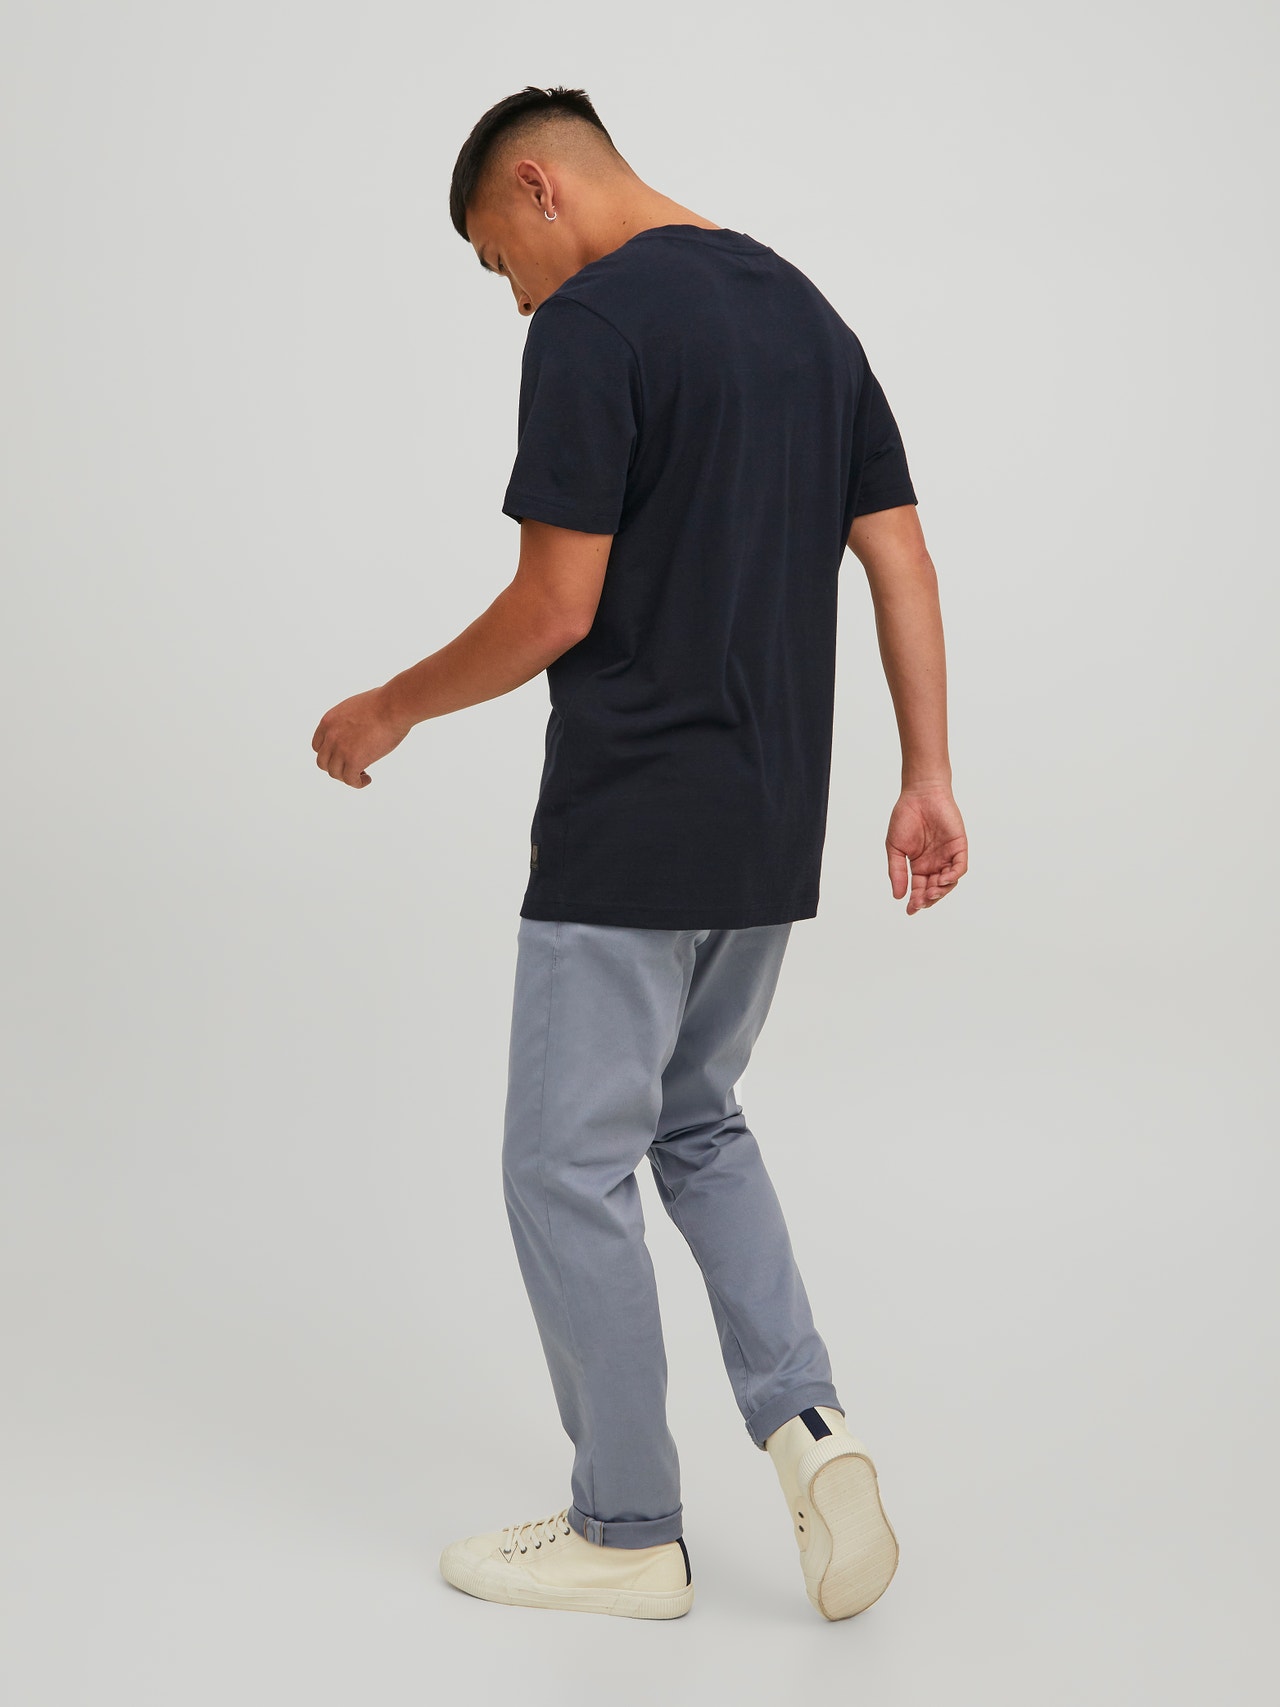 Jack & Jones Slim Fit Plátěné kalhoty Chino -Ultimate Grey - 12184901